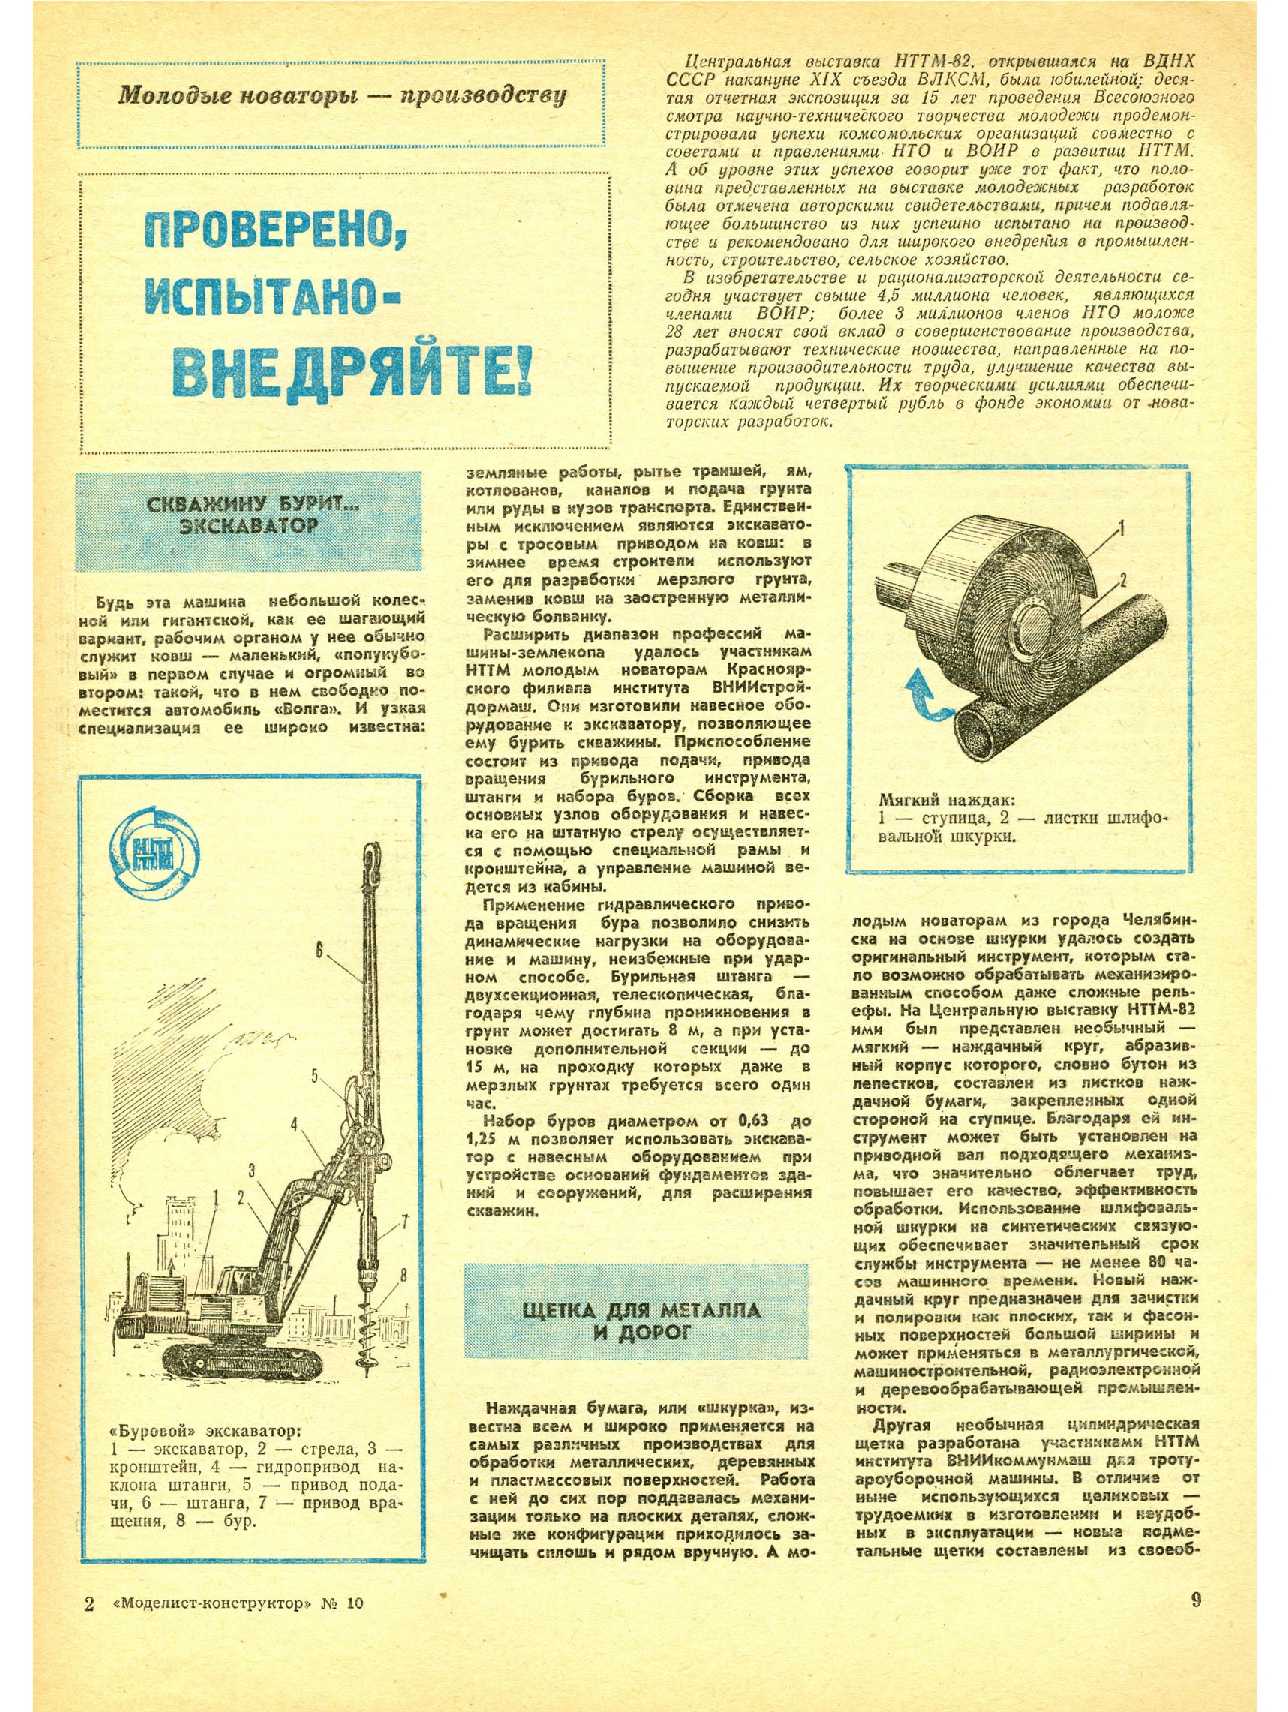 МК 10, 1982, 9 c.